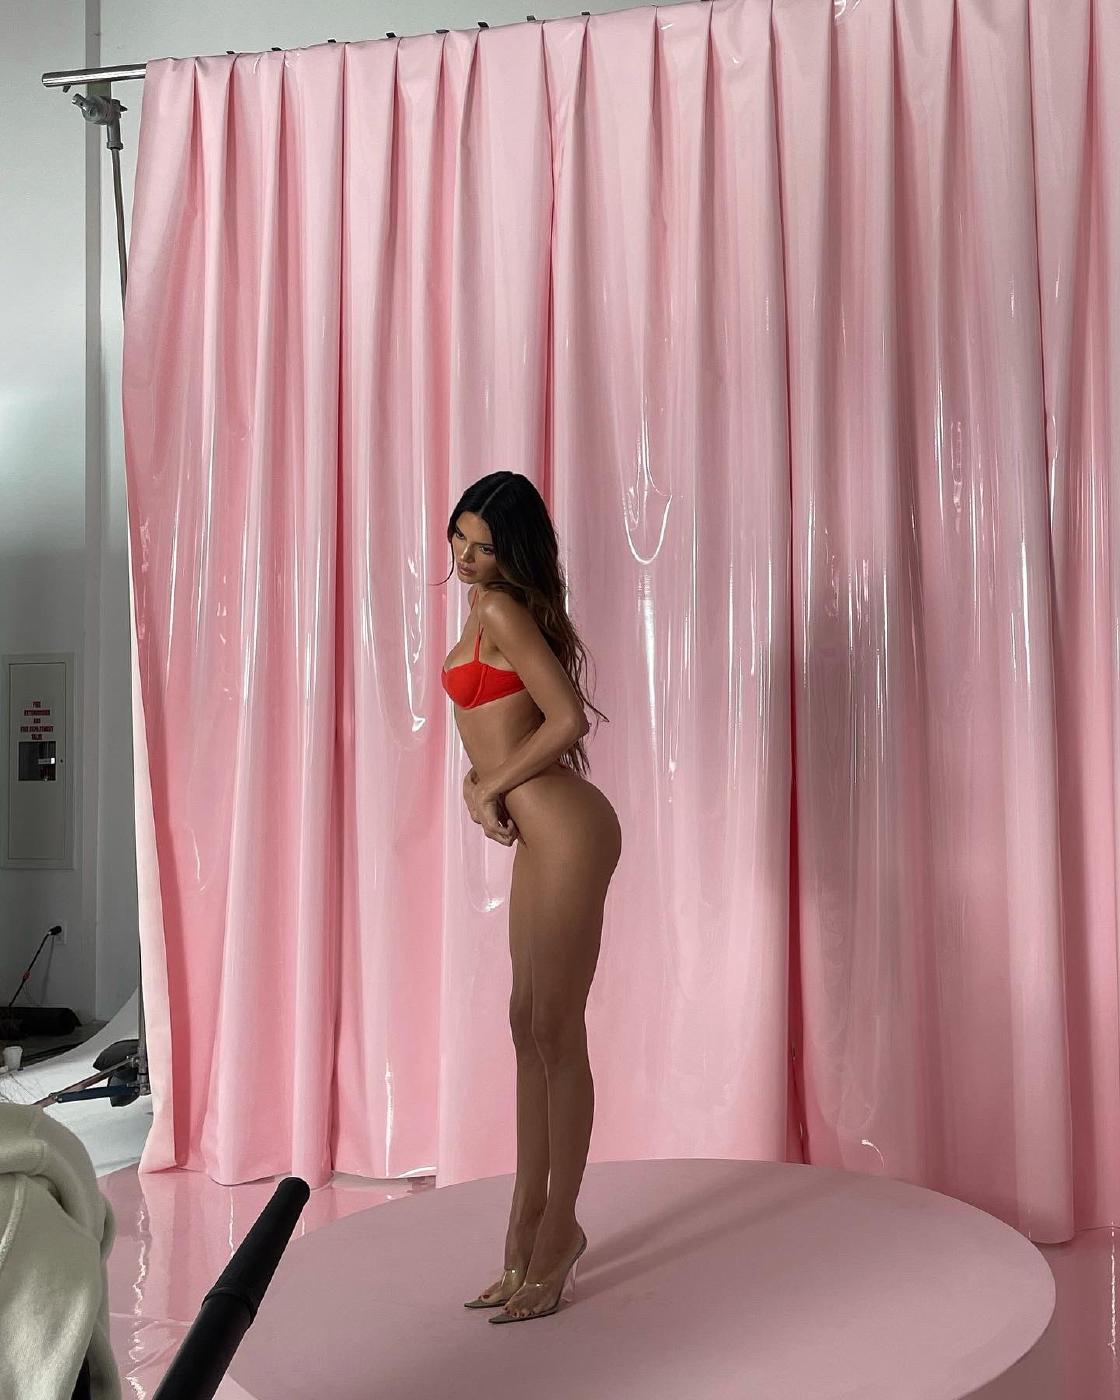 Kendall Jenner Skims Thong Photoshoot Leaked 3